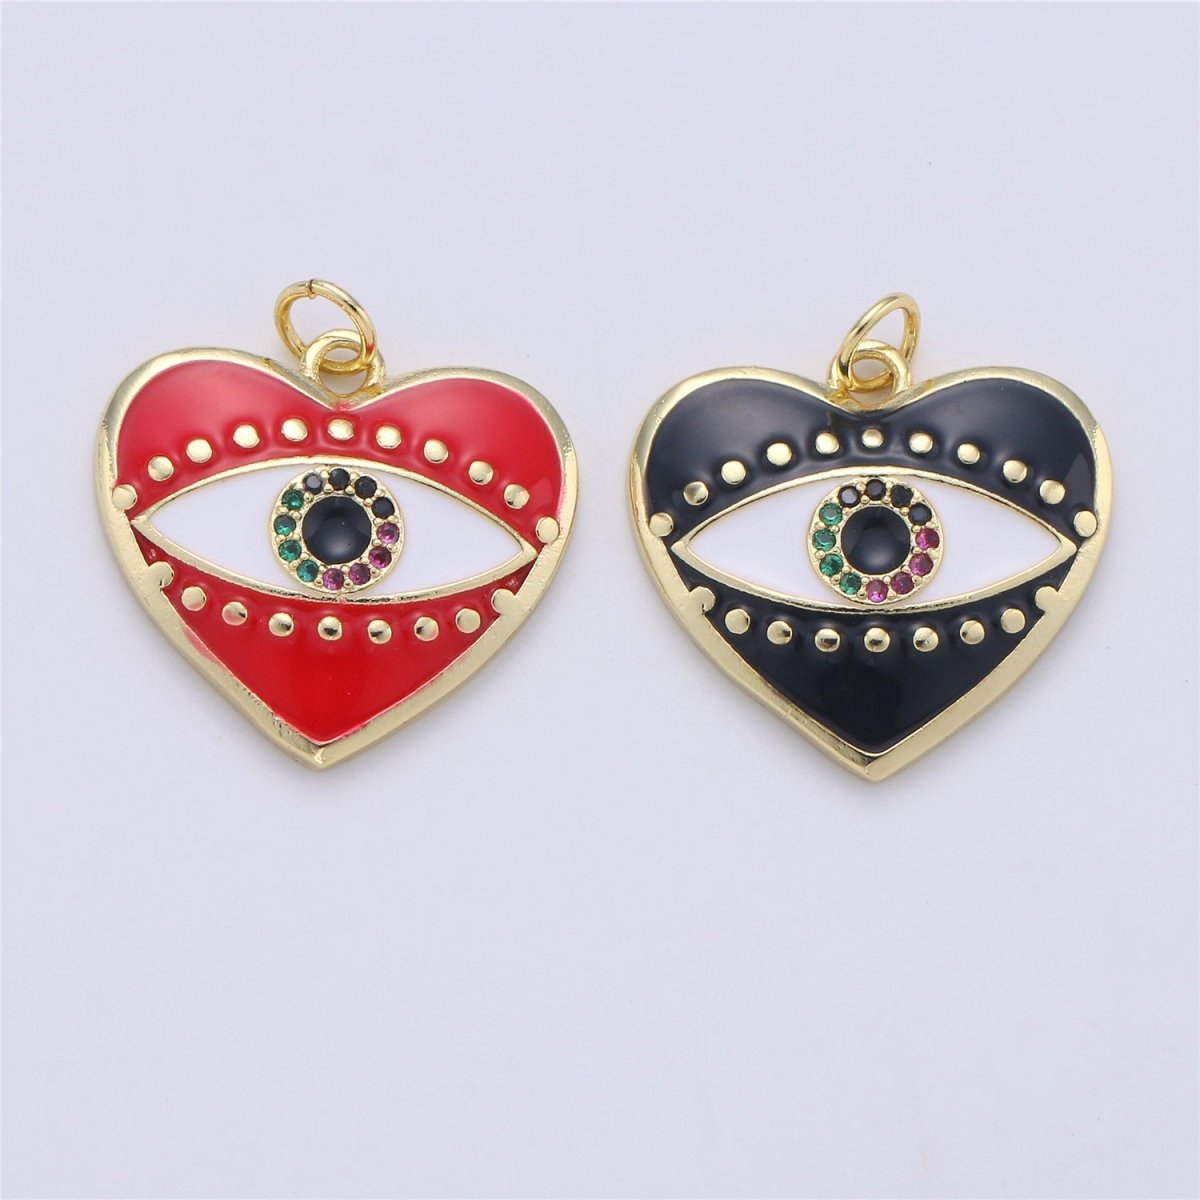 Heart Enamel Evil Eye Charm, Black Red eye of Ra pendant, Enamel eye Pendant, Protection eye charm Love Medallion Pendant in 24k gold Fill C-756 - DLUXCA